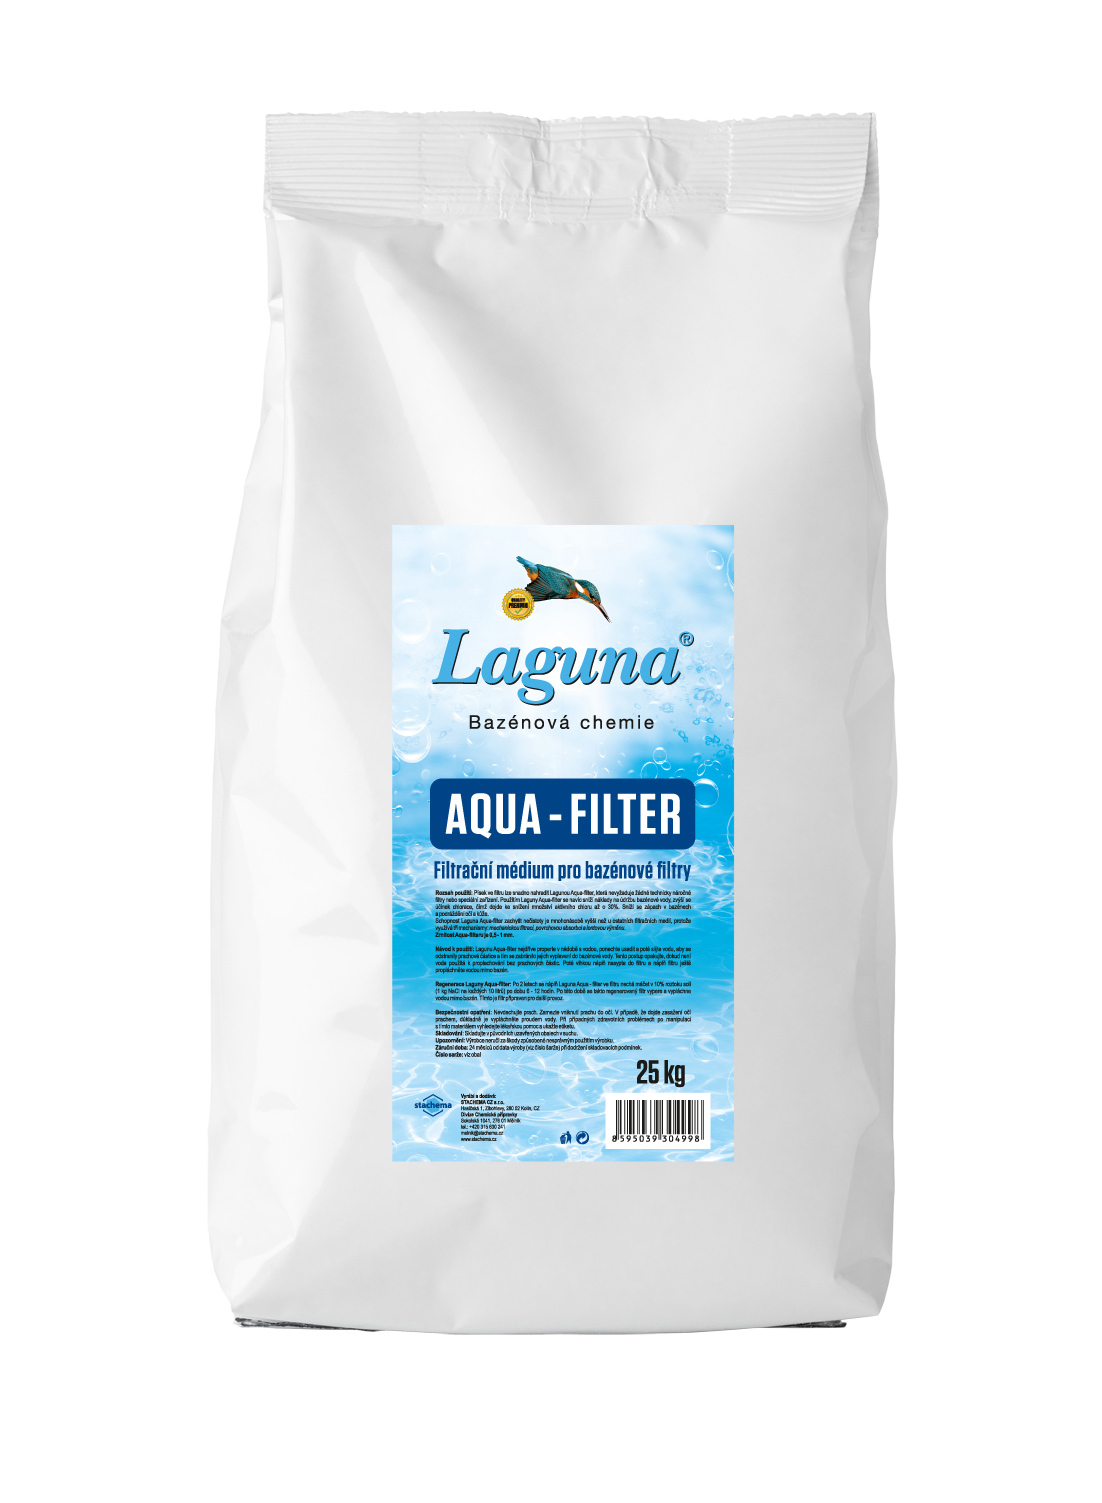 Aqua filter - Laguna 25 kg